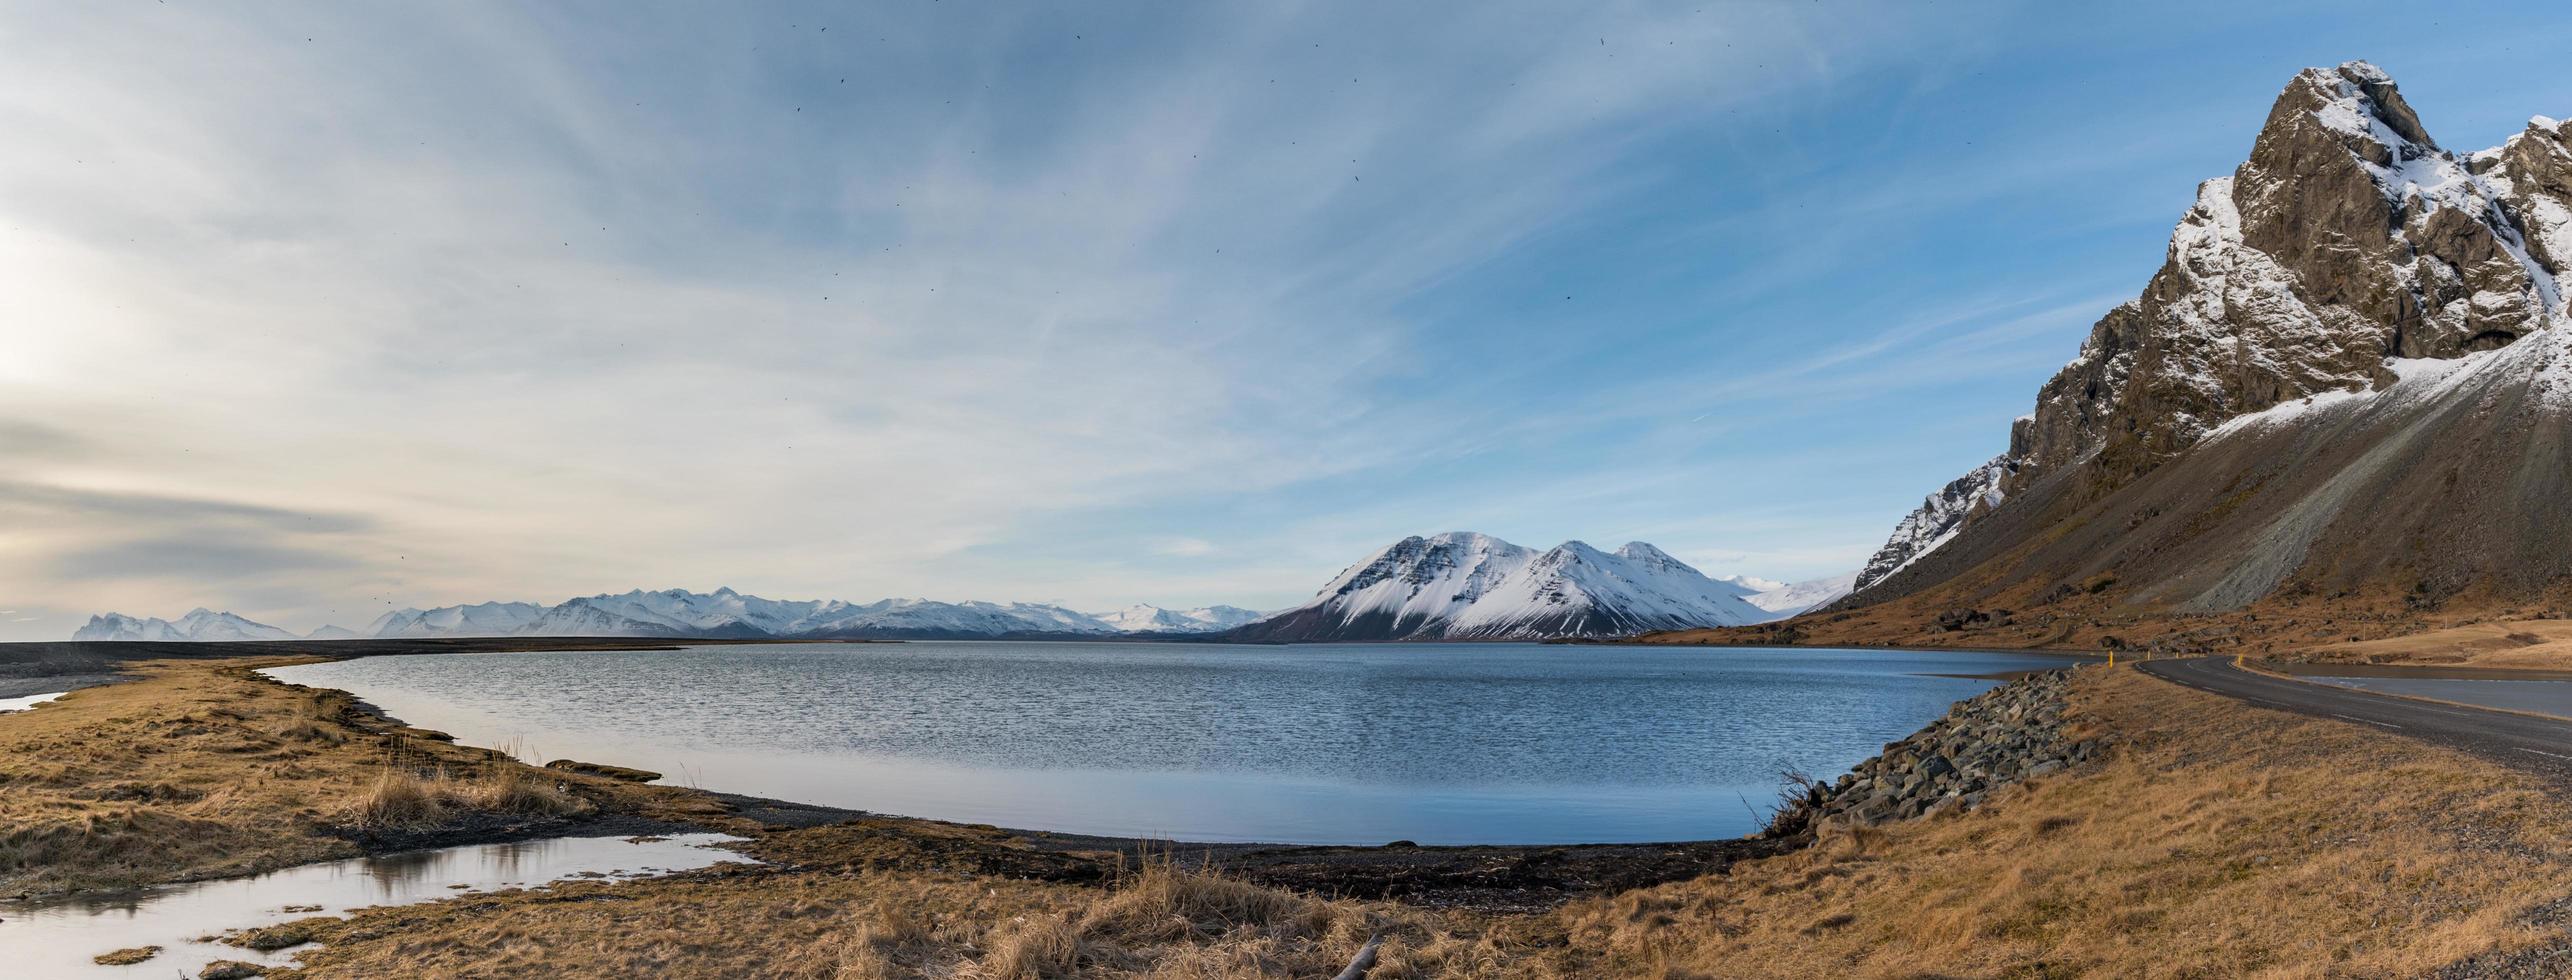 Vue paysage d'Islande de l'île de djupivogur photo